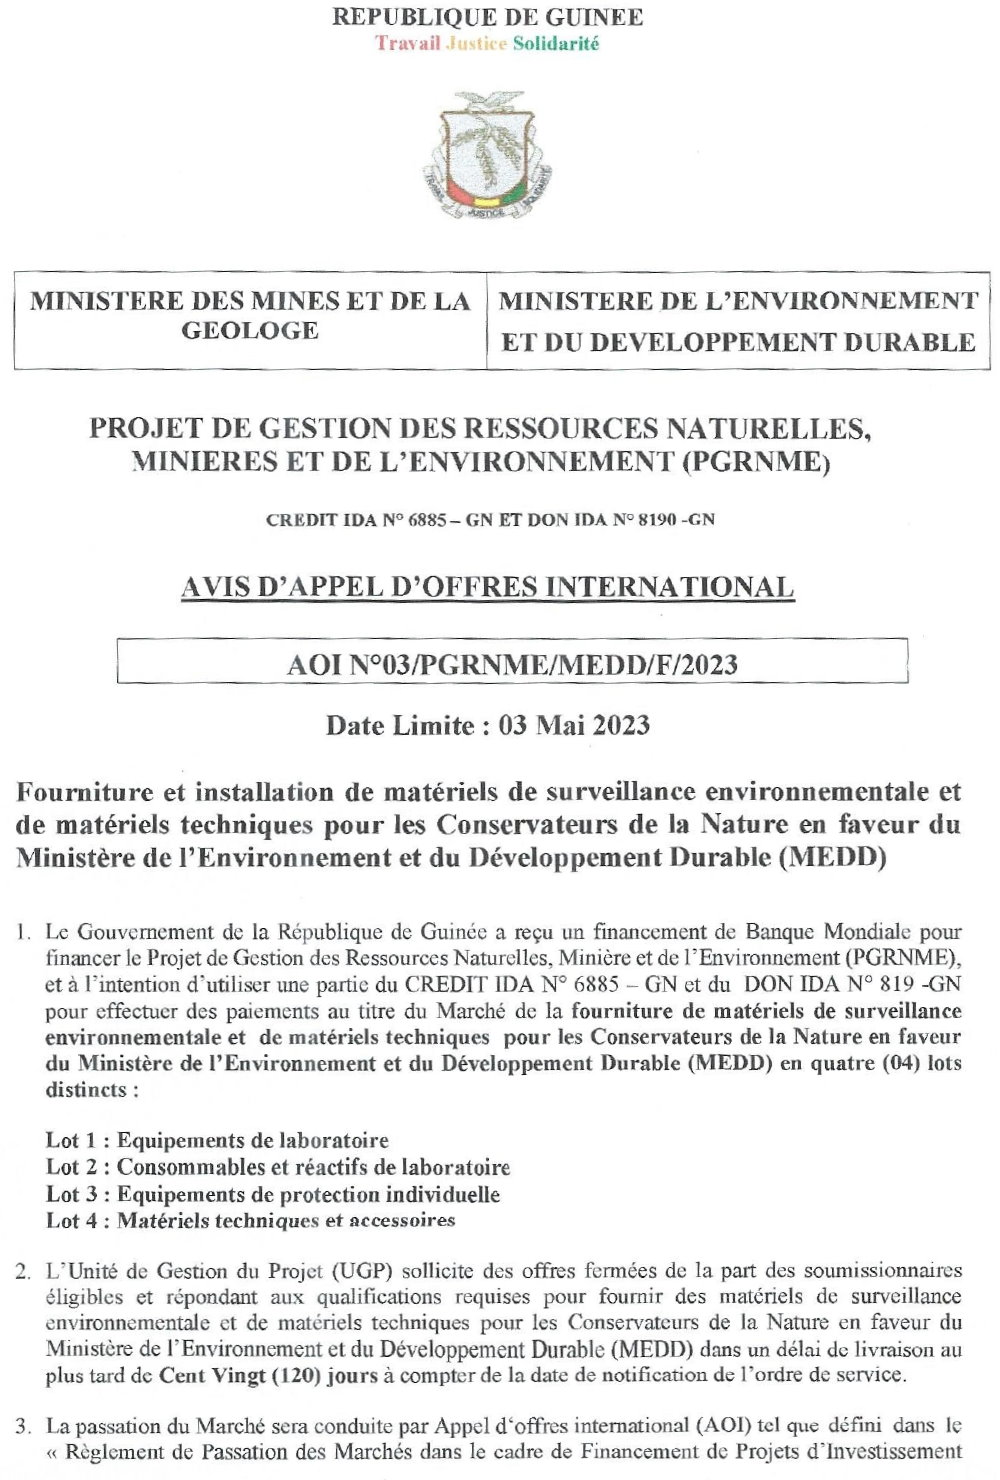 Fourniture et installation de matériels de surveillance environnementale et de matériels techniques pour les Conservateurs de la Nature en faveur du Ministère de l’Environnement et du Développement Durable (MEDD) | page 1